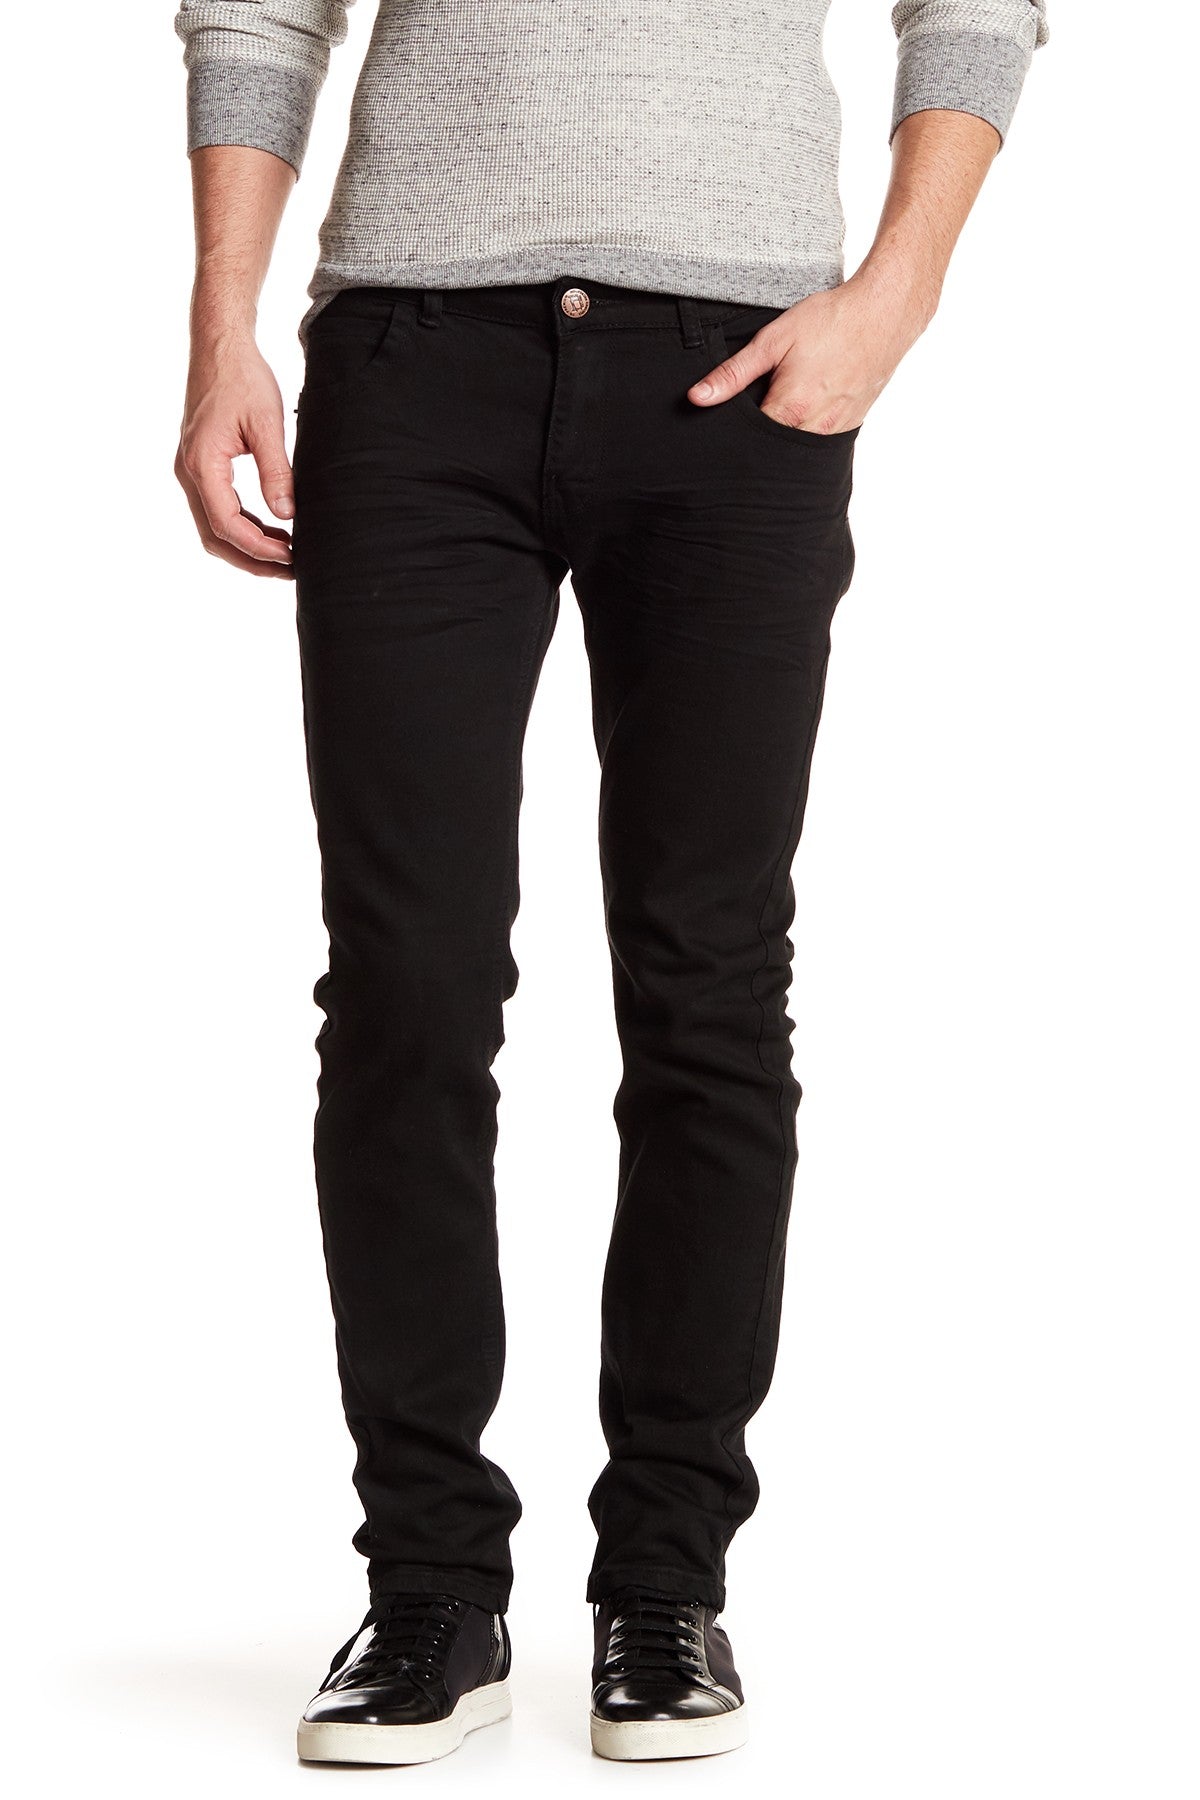 Tailored Recreation Premium Black Slim Tapered Denim Pant